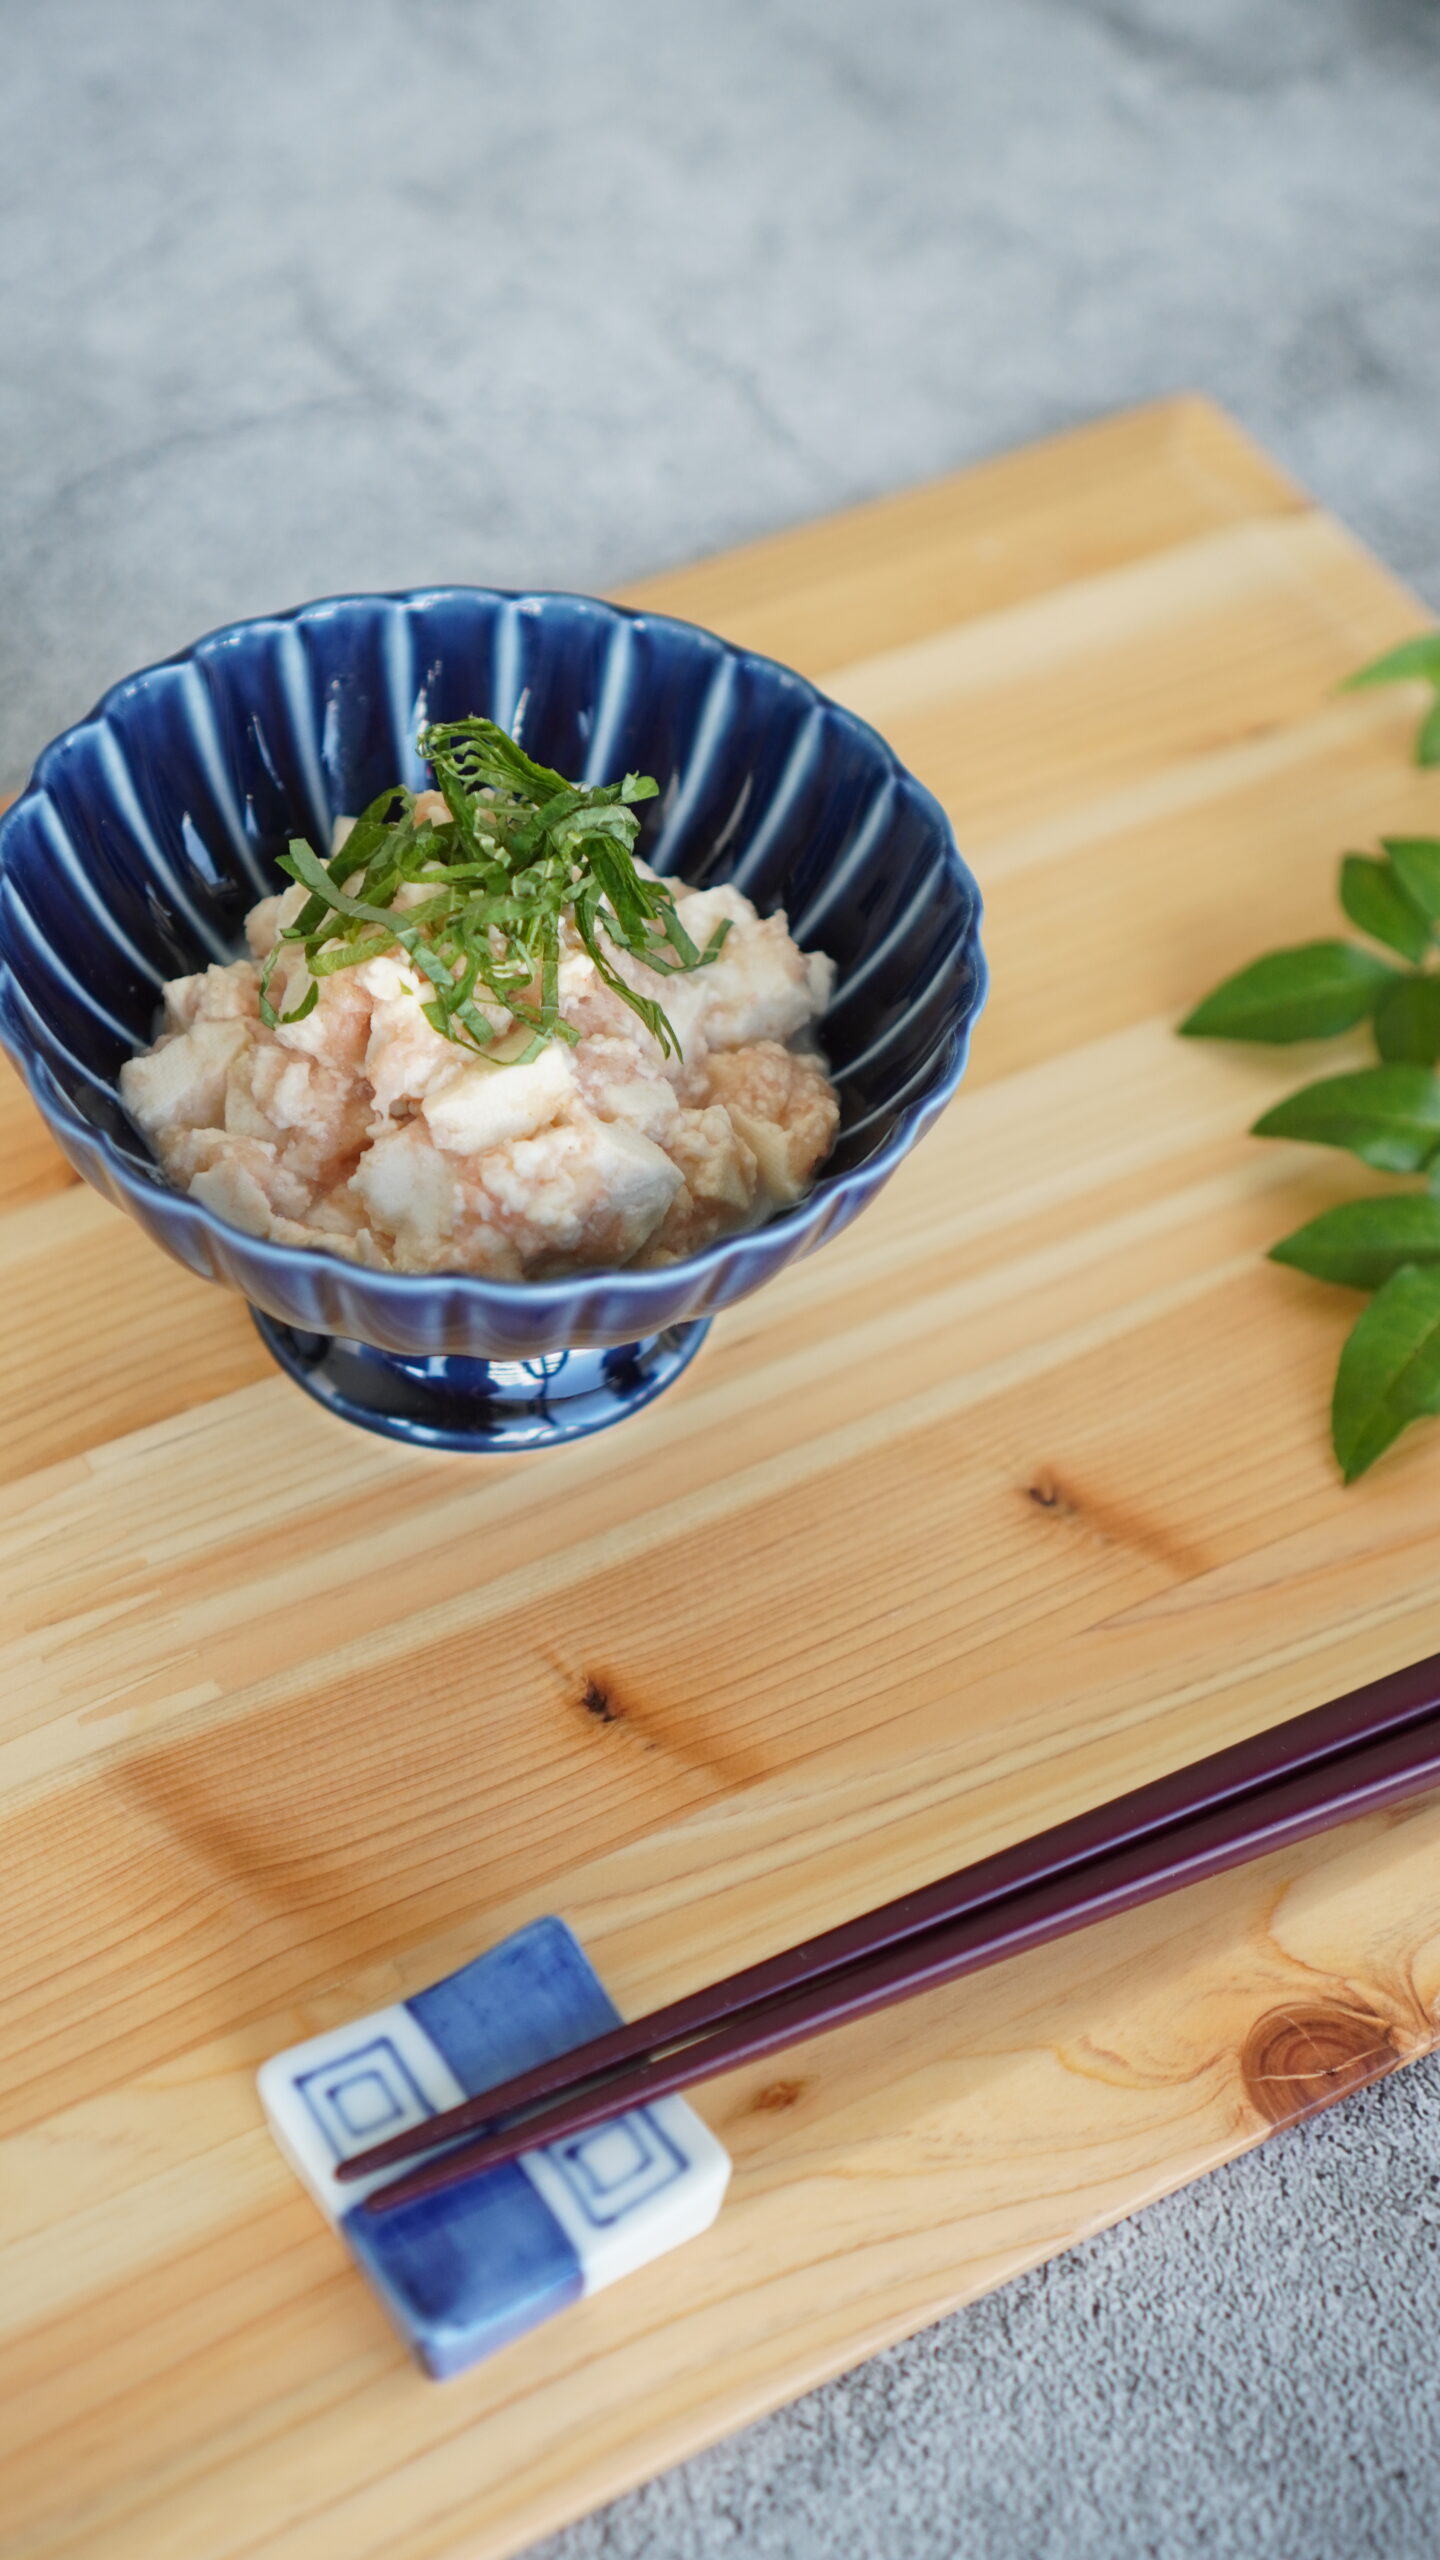 新しい玄米粉「玄米パウダー」レシピ「明太おろし和え豆腐」